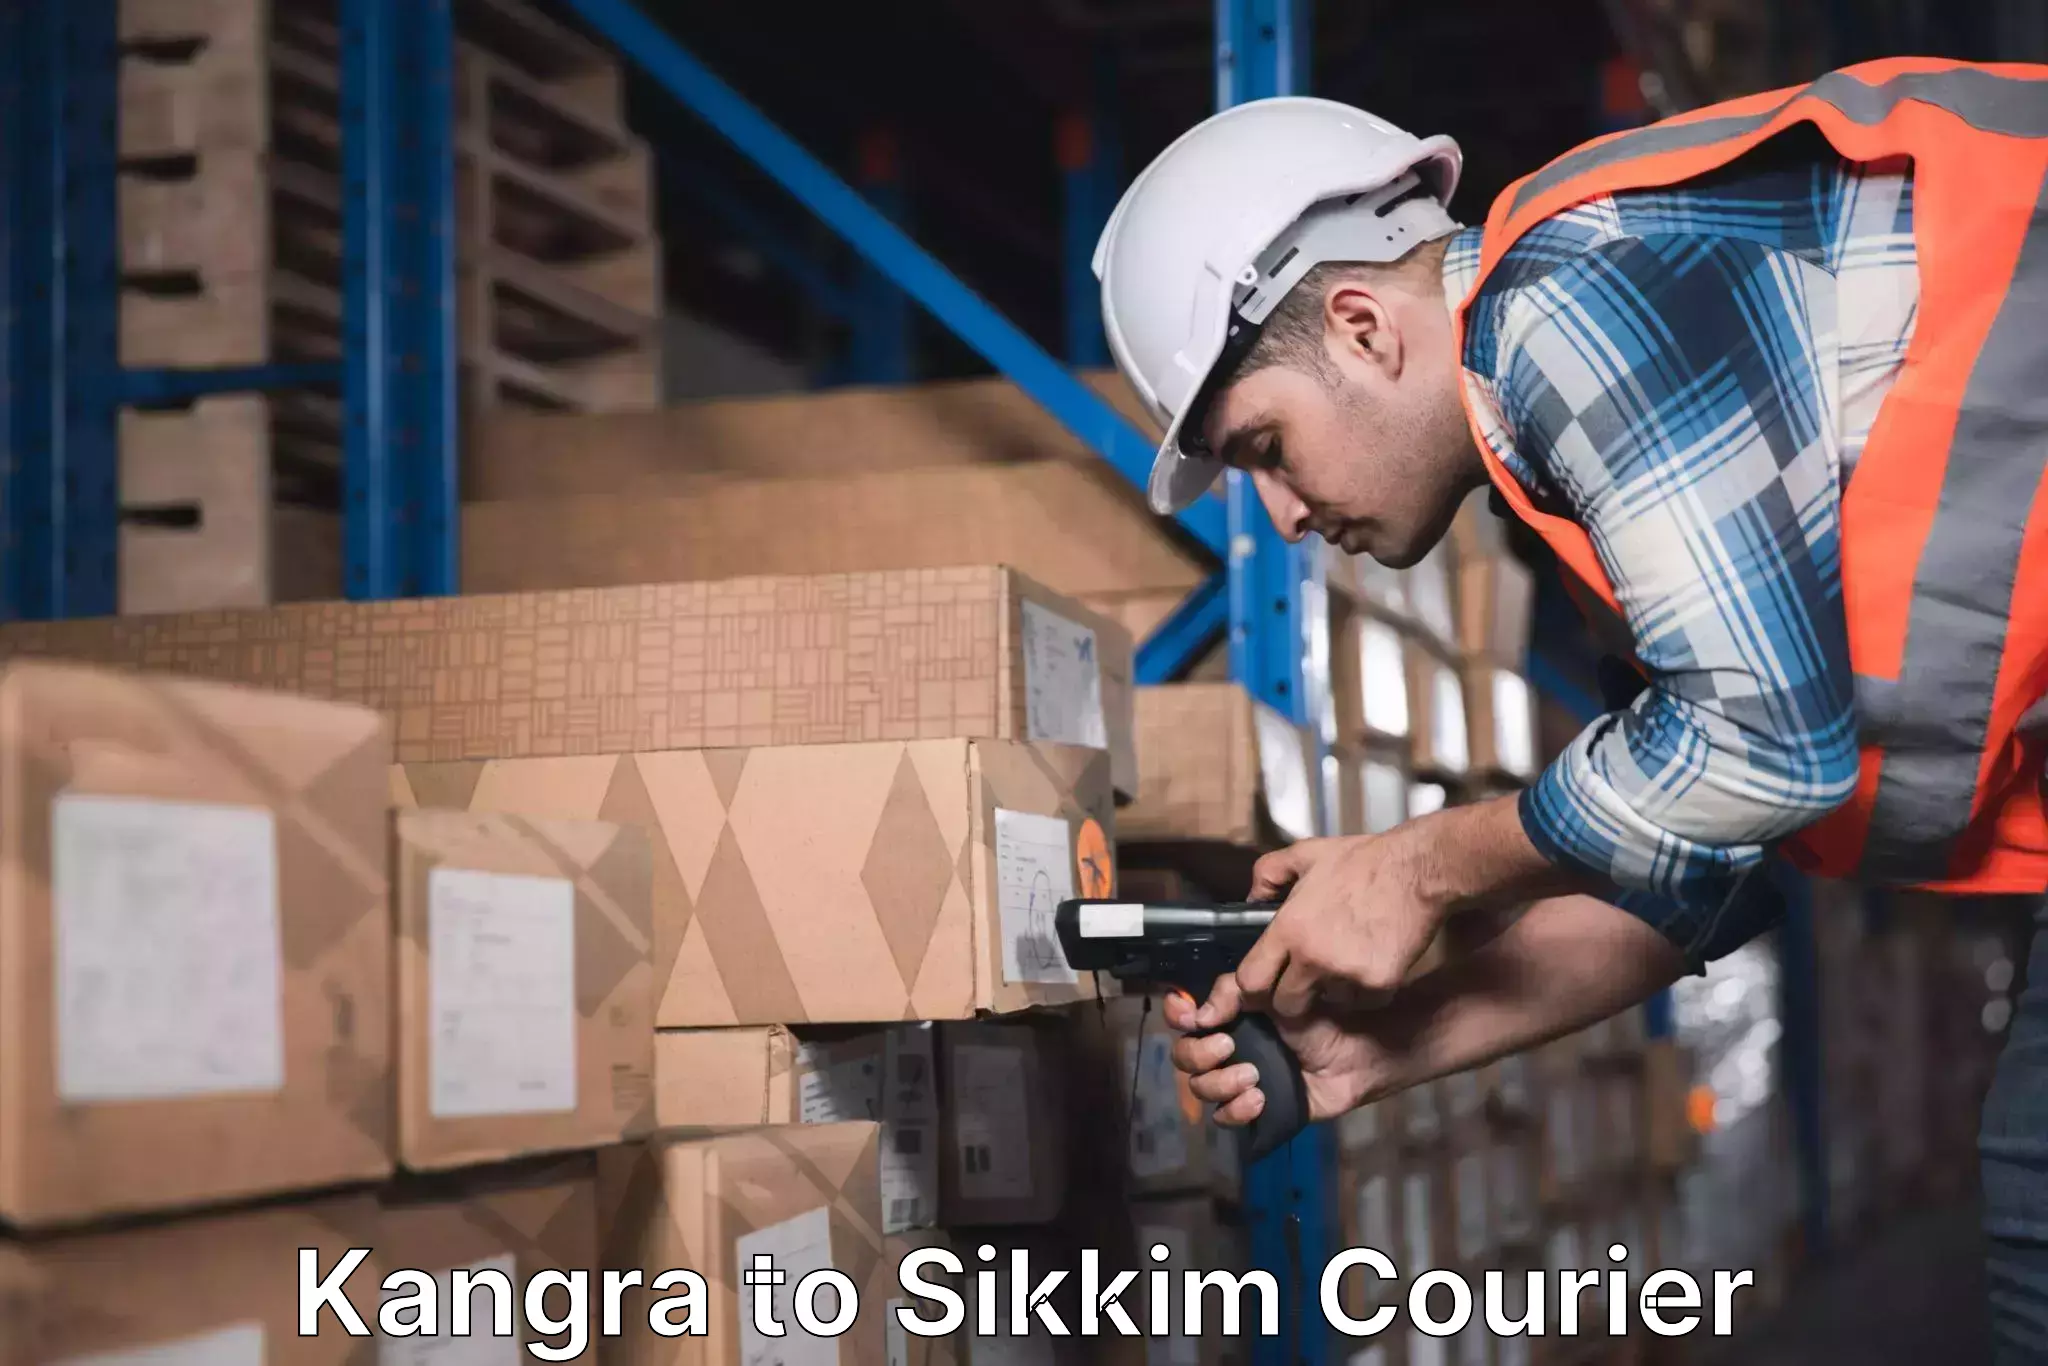 Digital courier platforms Kangra to Pelling